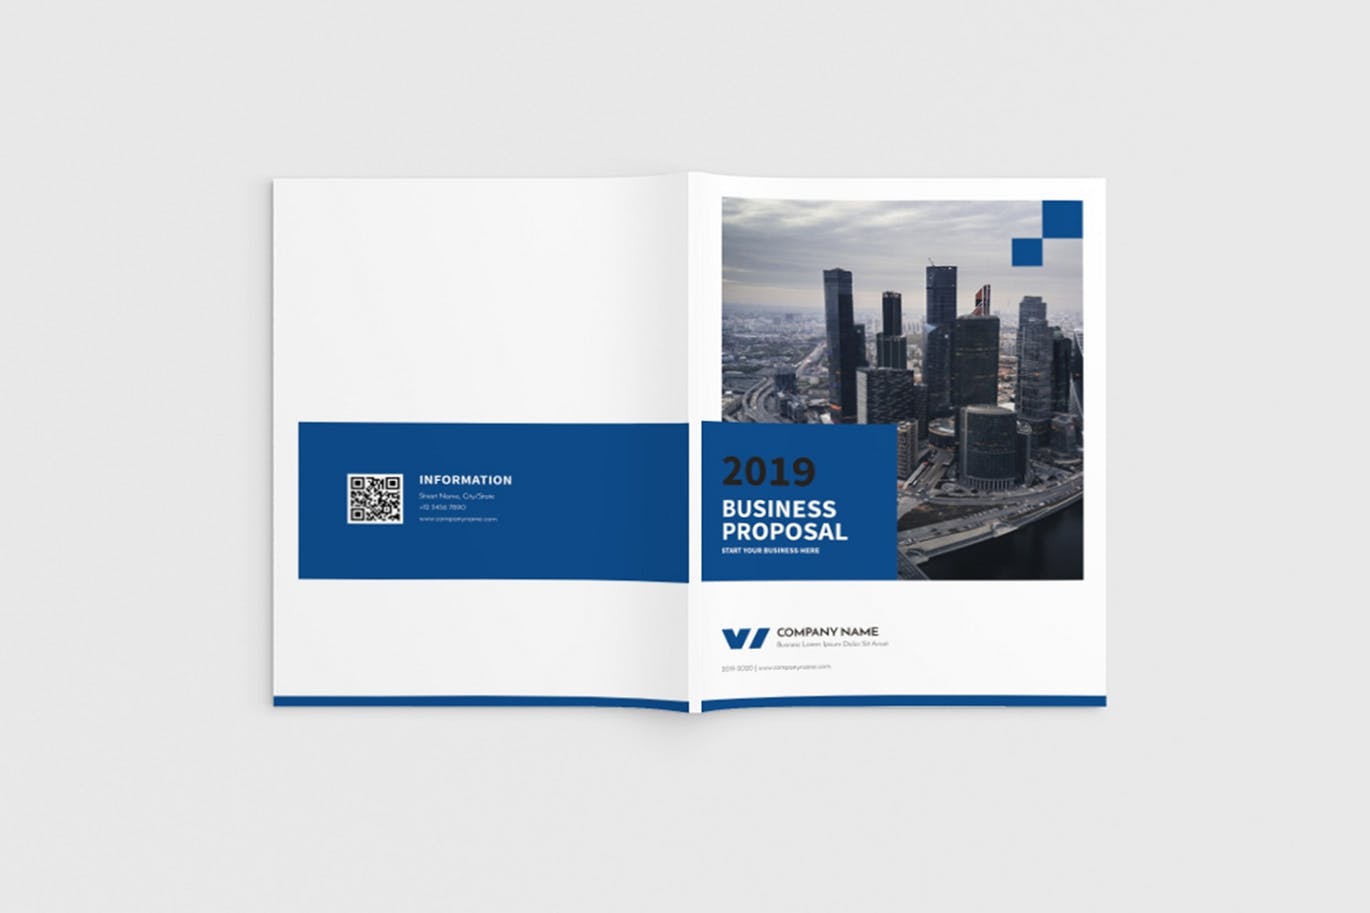 商业计划书/企业简介宣传画册设计模板 Walkers – A4 Business Brochure Template插图